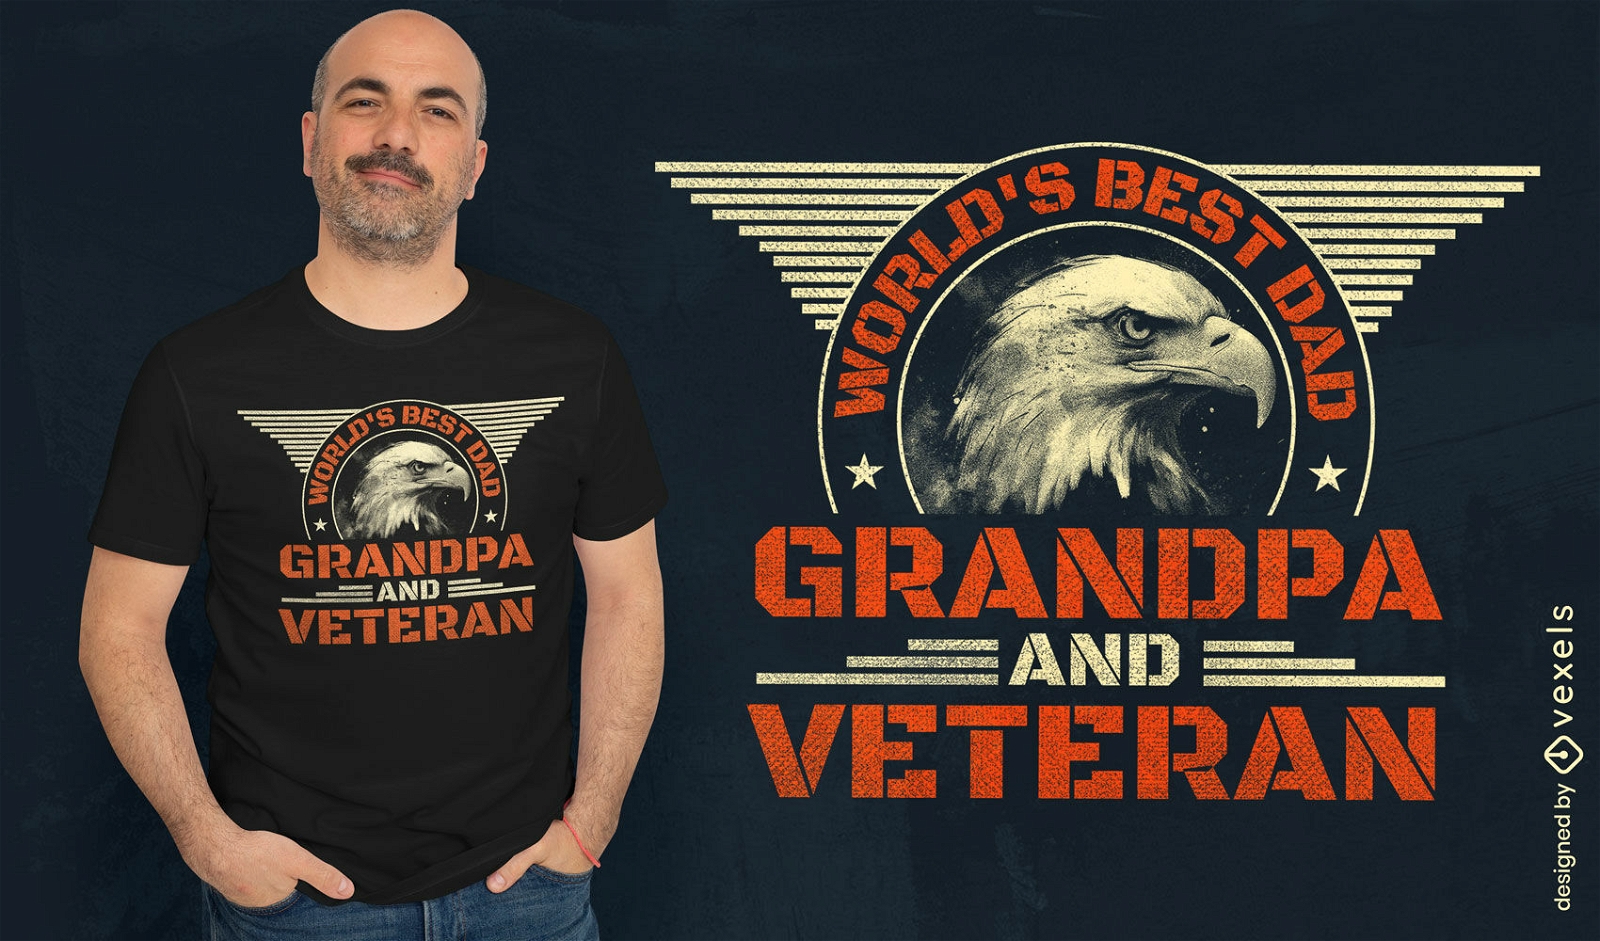 Grandpa and veteran t-shirt design